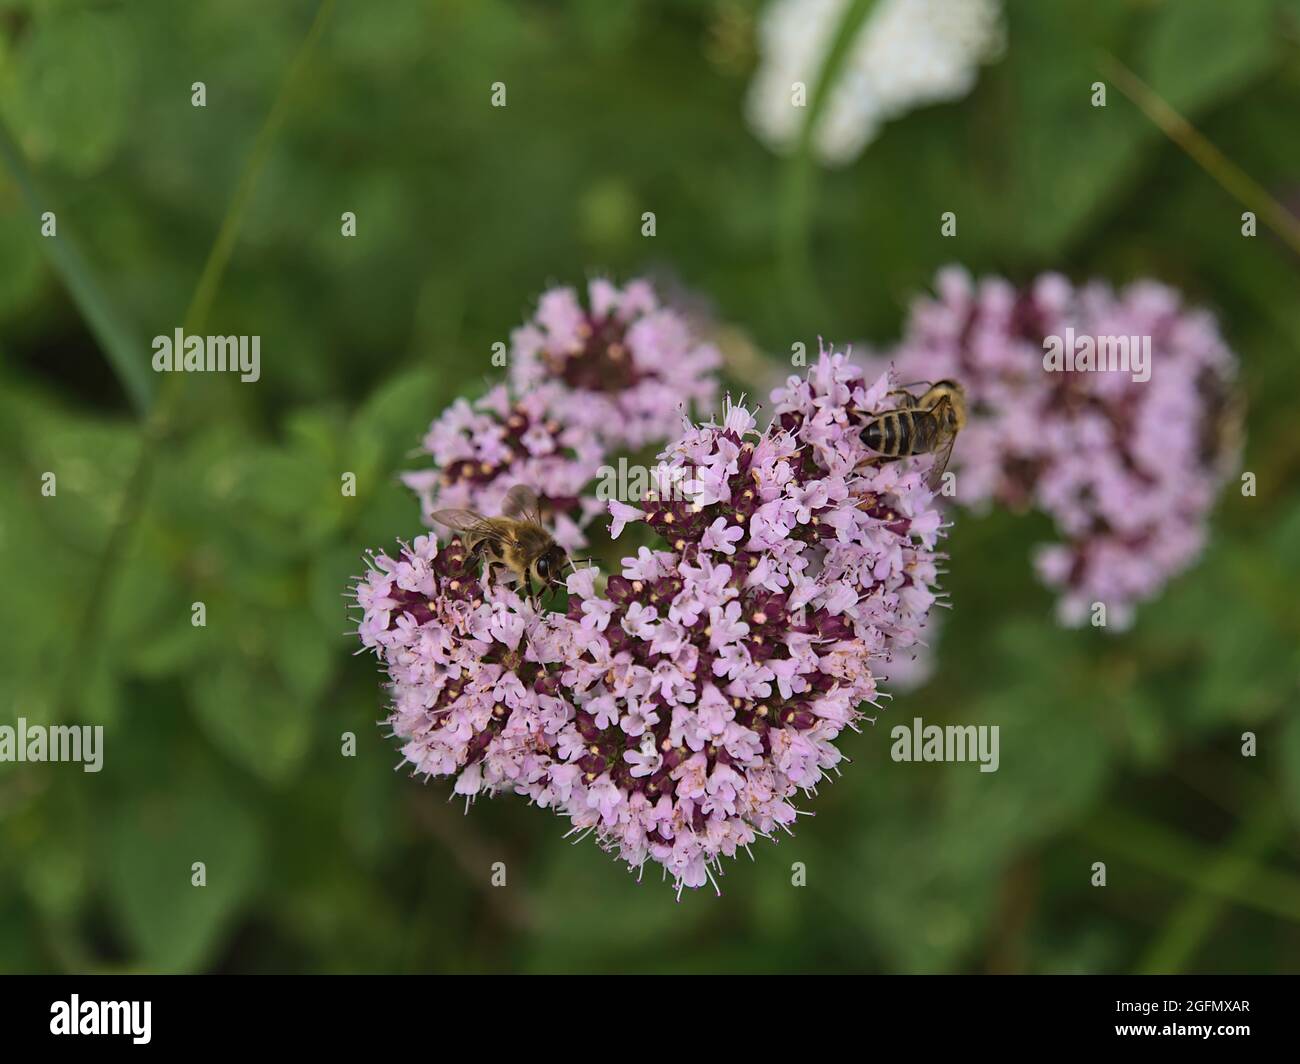 Hochwinkelansicht des Blütenkopfes einer Oranganopflanze (origanum vulgare) mit rosa Blüten und zwei Bienen, die Nektar auf einer Wiese sammeln. Stockfoto